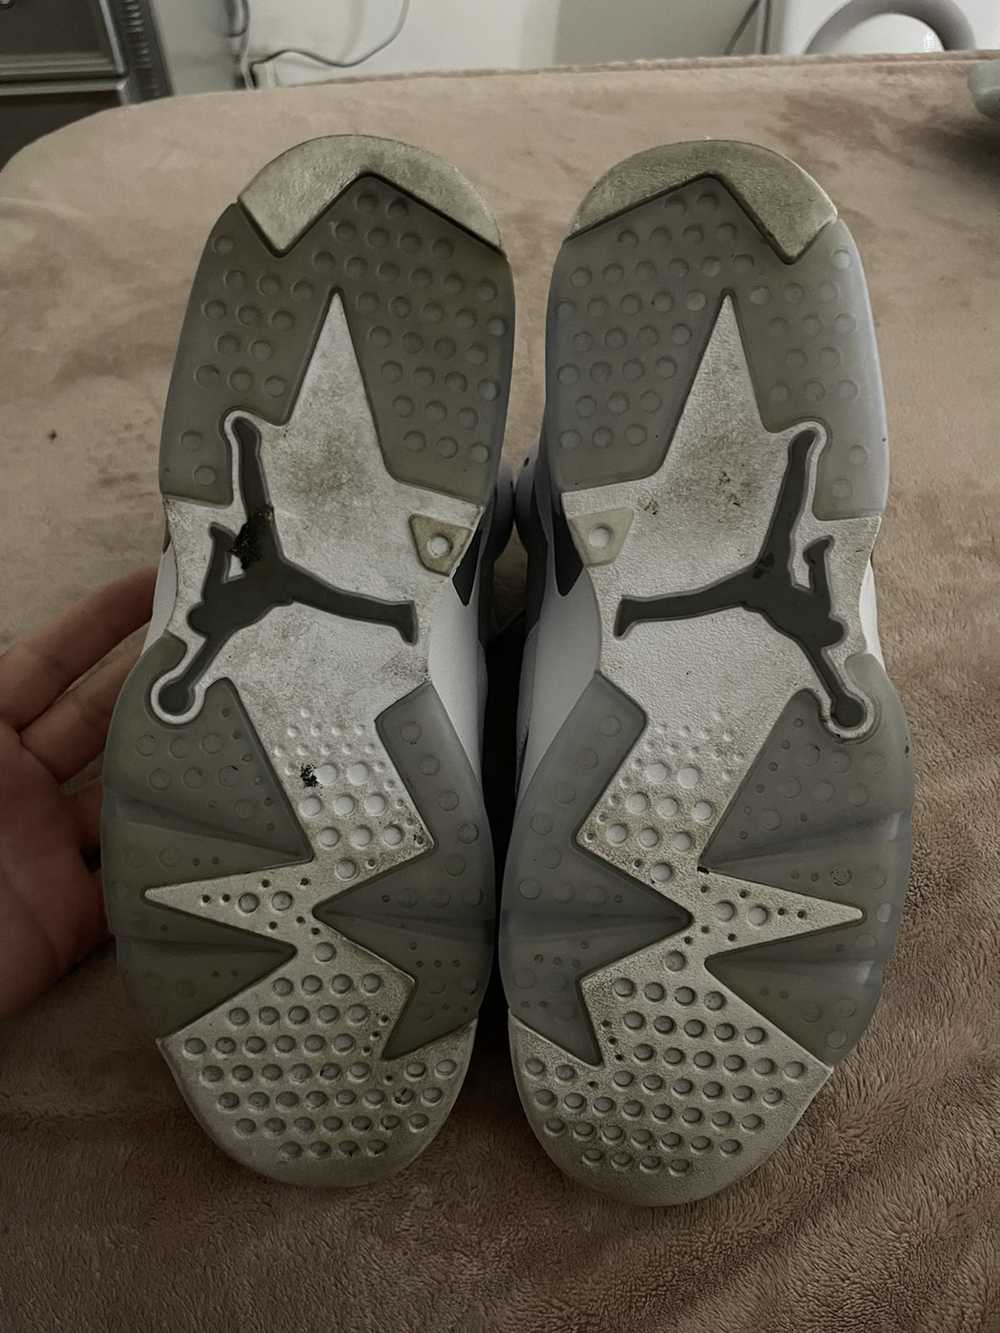 Jordan Brand Jordan 6s “Cool Grey” - image 5